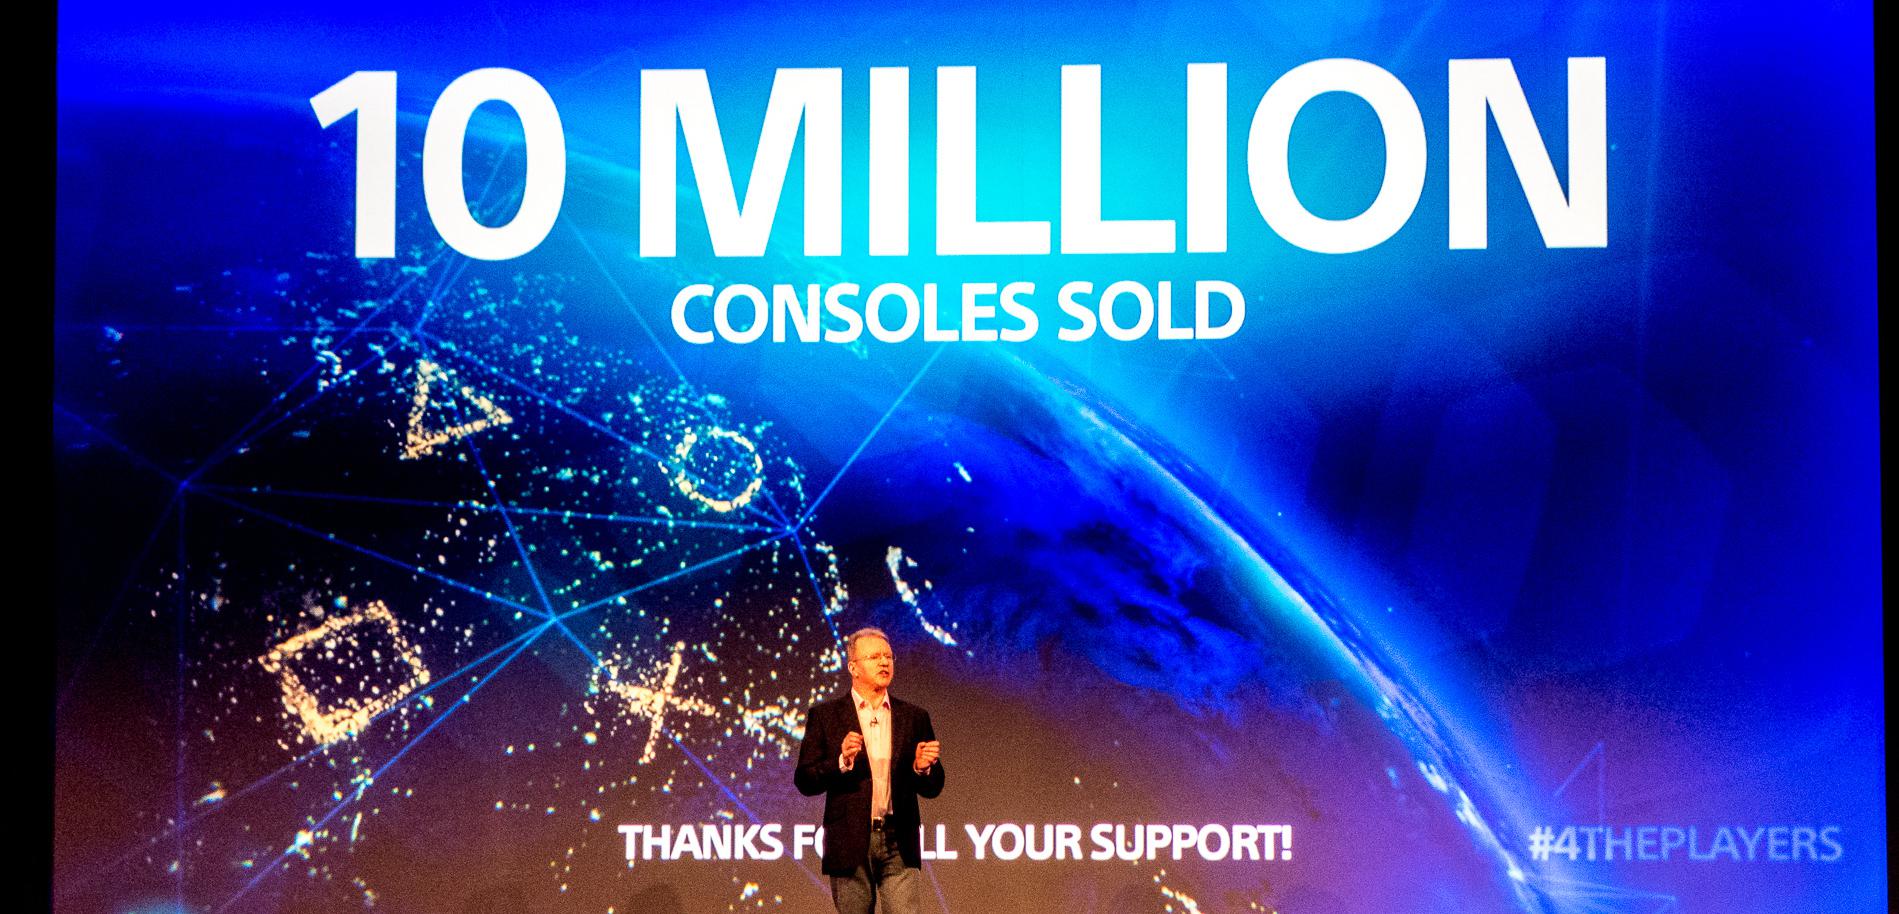 Obniżka ceny PlayStation 4 o 50 dolarów - już oficjalnie!